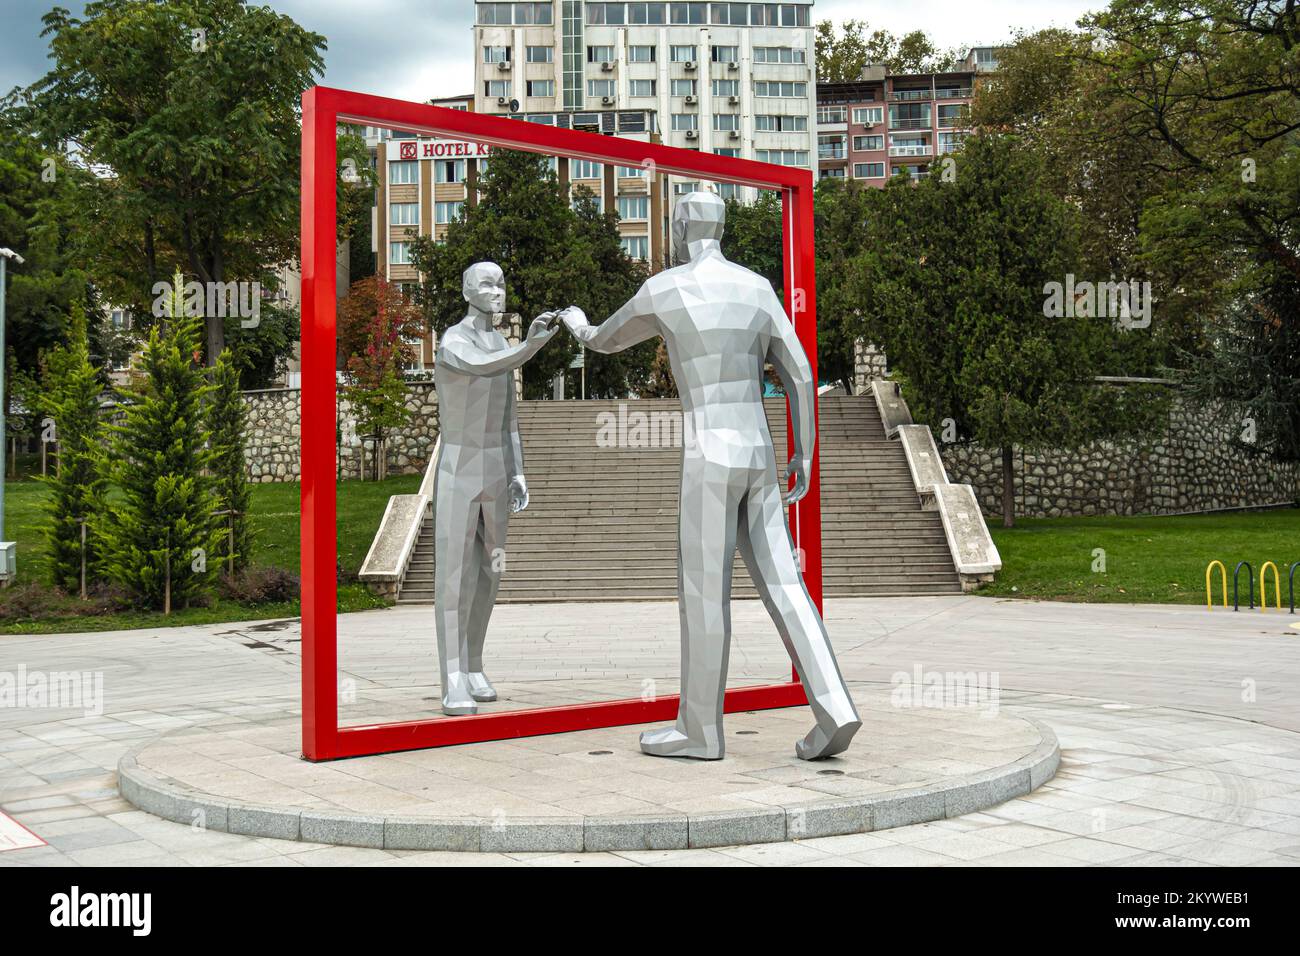 World Mirror - Mirror Man Statua, dell'artista sudcoreano Young-ho Yoo eretto nel Giardino pubblico di Bursa il 16 novembre 2020. Bursa arte, Turchia Foto Stock